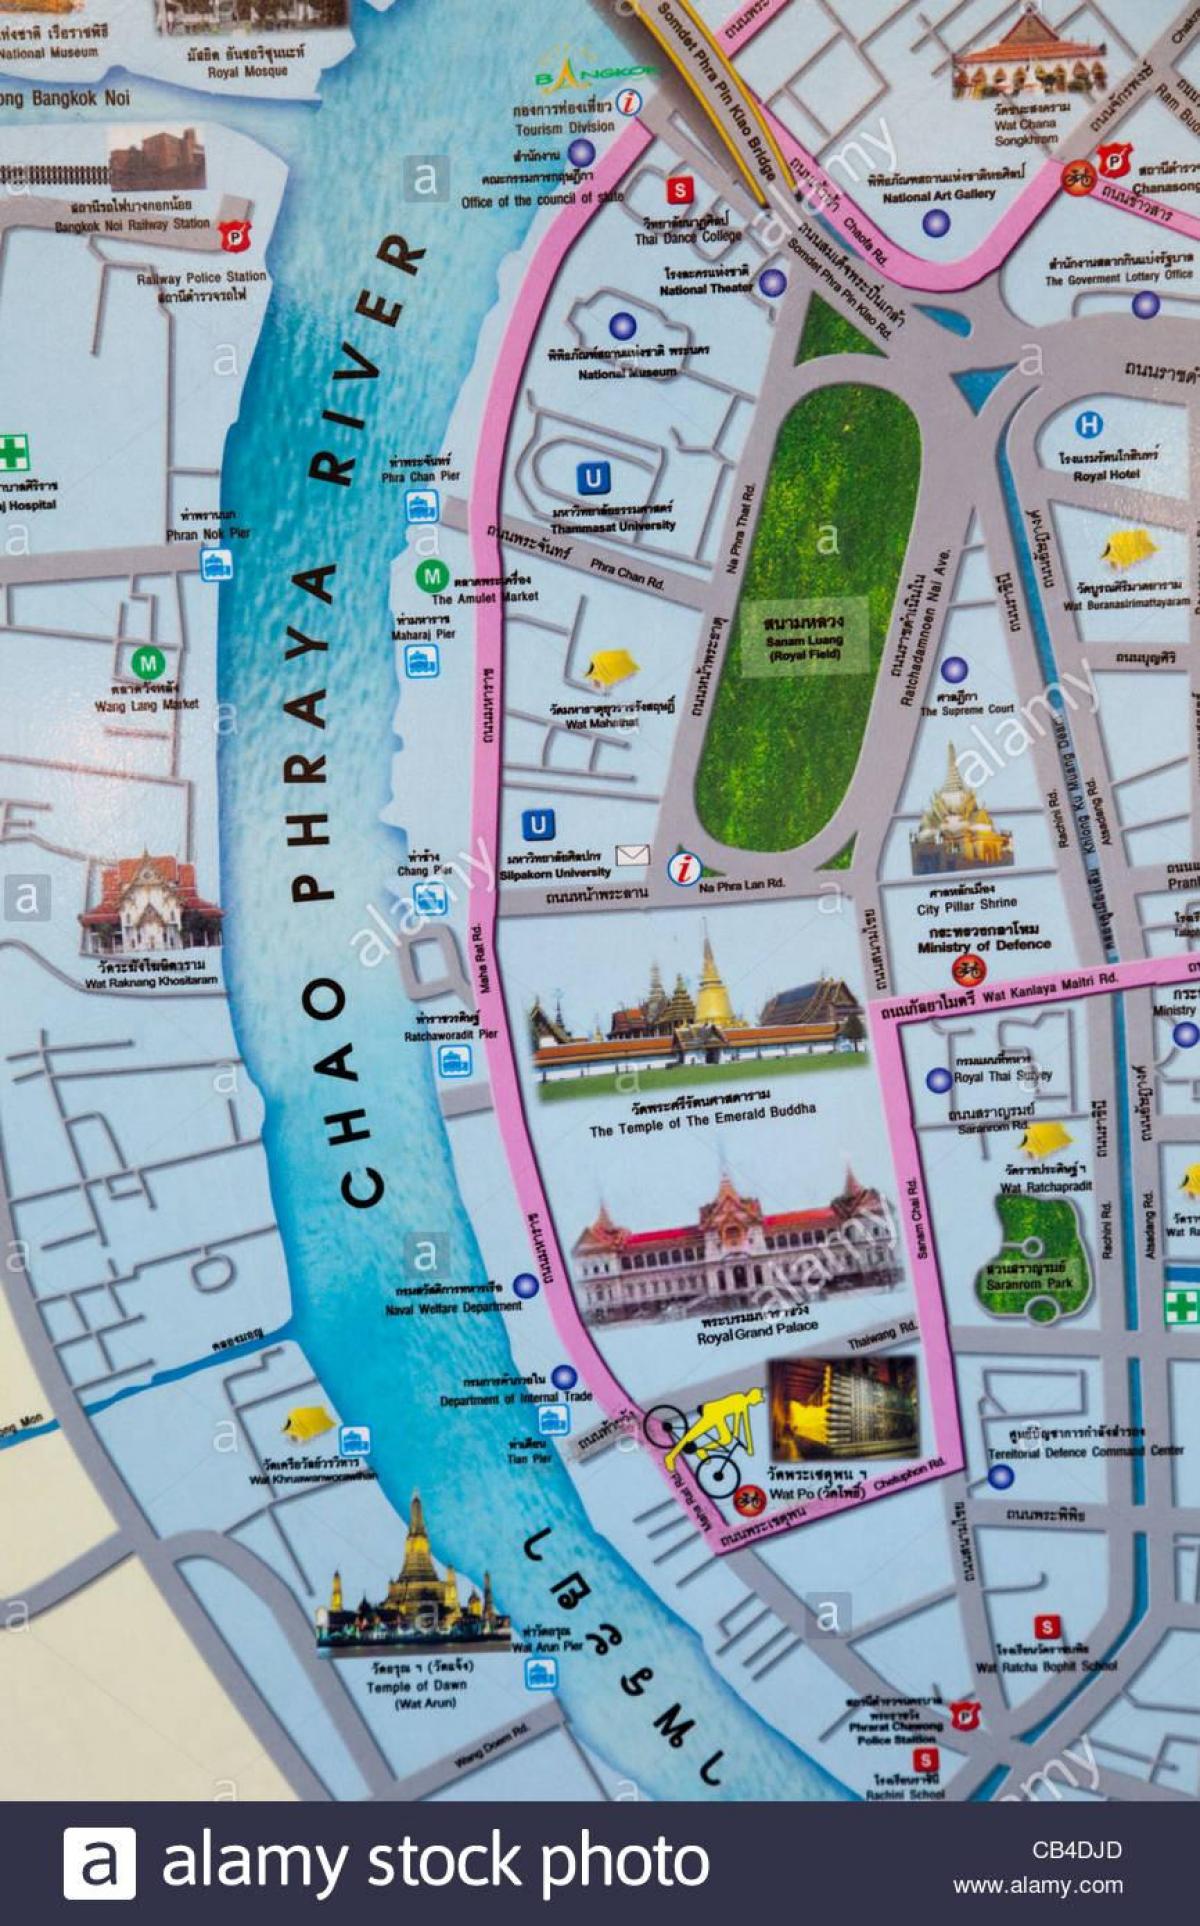 bangkok hartën turistike spote